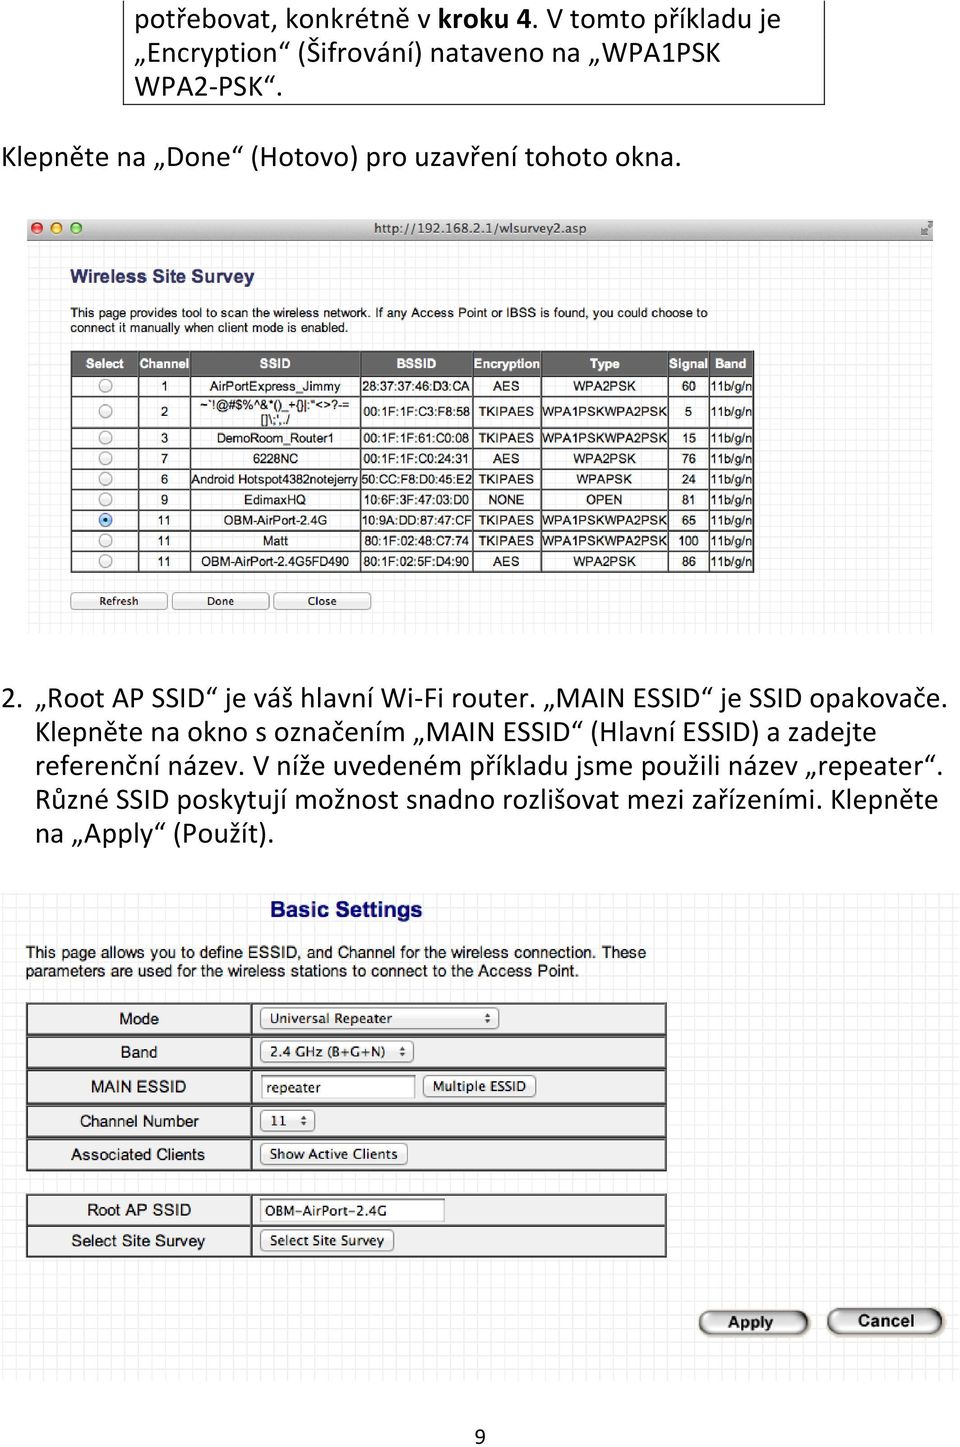 MAIN ESSID je SSID opakovače. Klepněte na okno s označením MAIN ESSID (Hlavní ESSID) a zadejte referenční název.